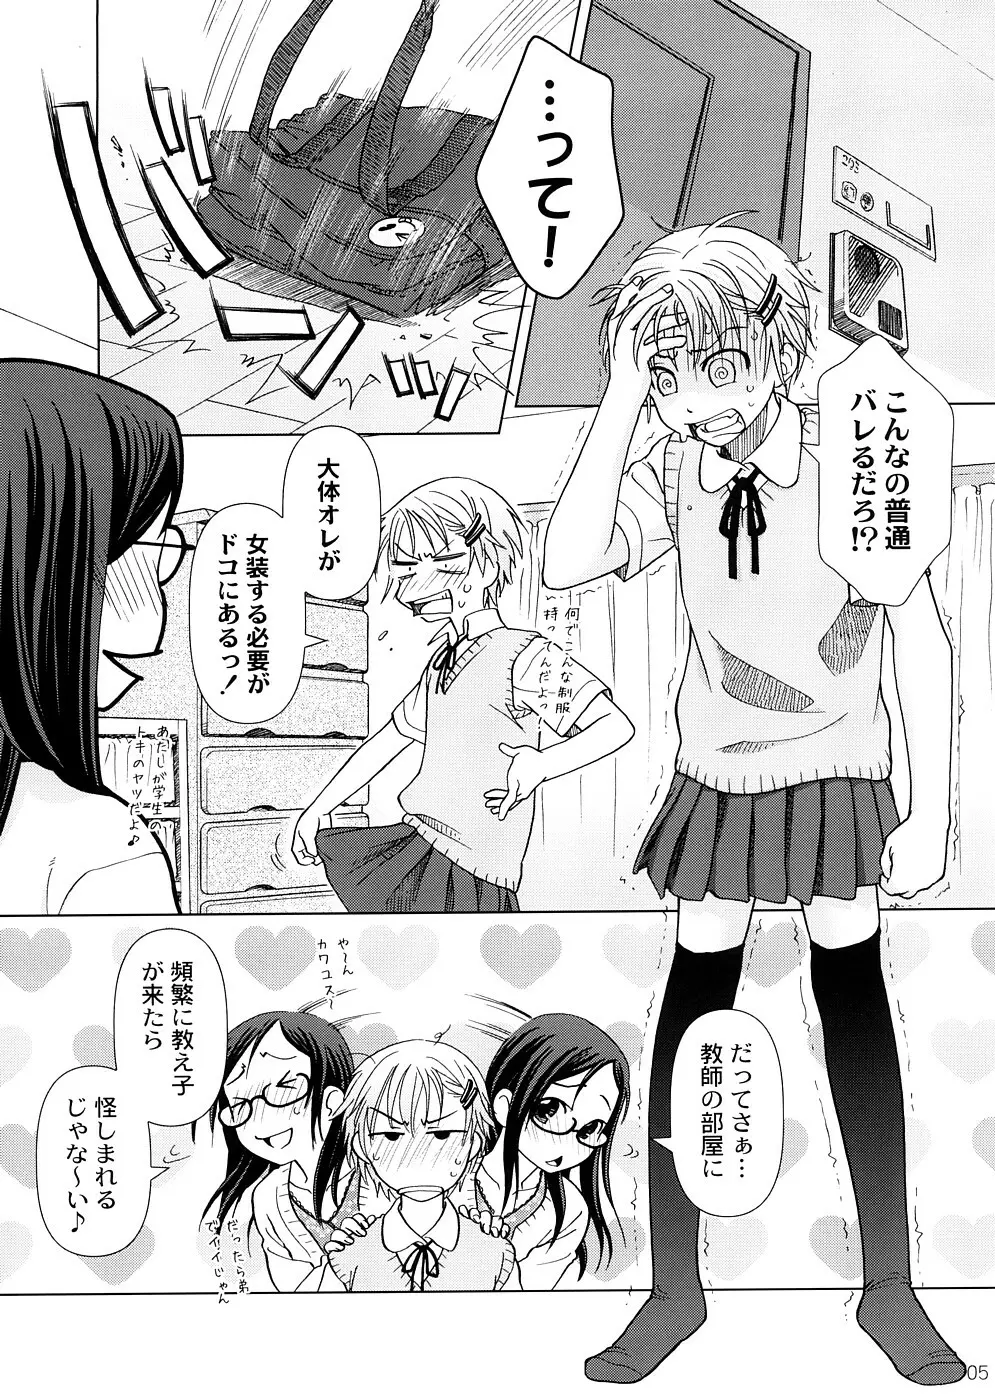 (COMIC1☆2) [オタクビーム (オオツカマヒロ)] 2514 [24→←14] #Extra chapter 4ページ